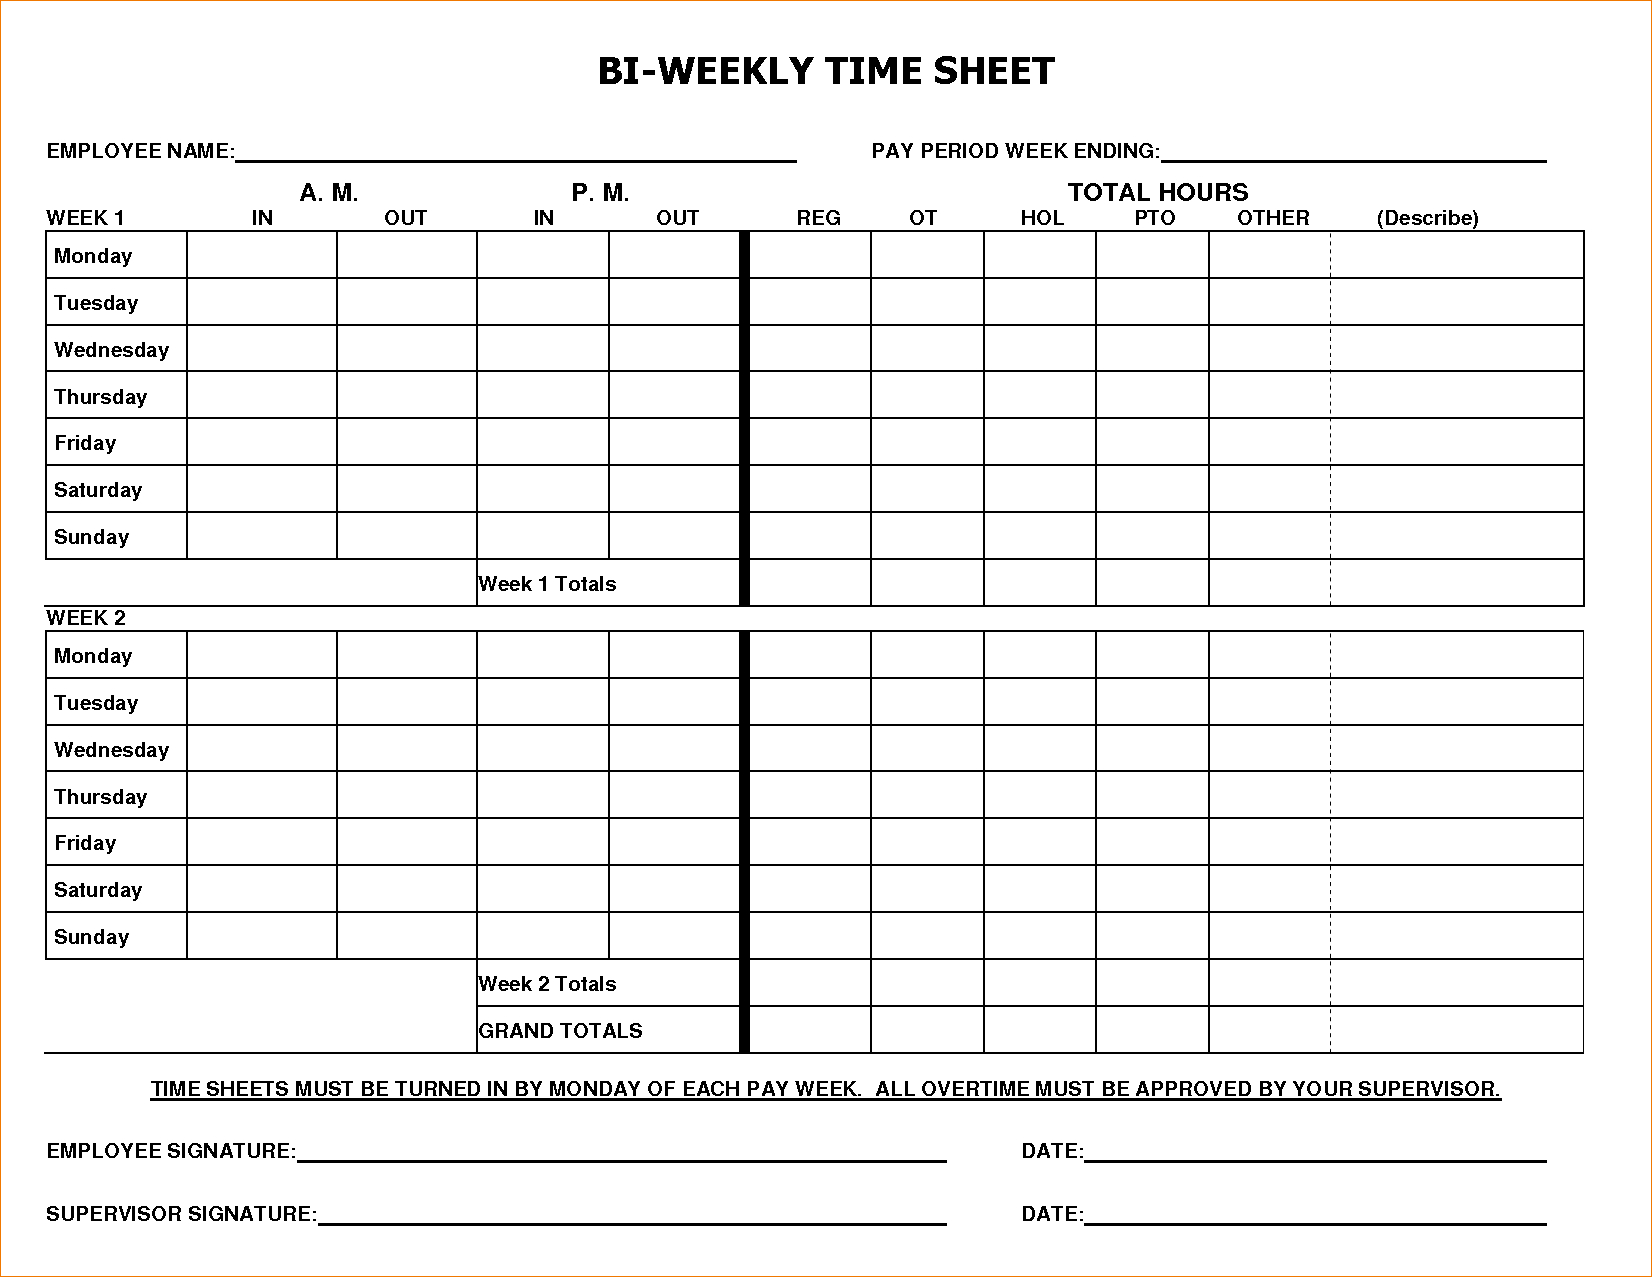 weekly-timesheet-spreadsheet-regarding-times-sheet-template-and-8-bi-weekly-timesheet-template